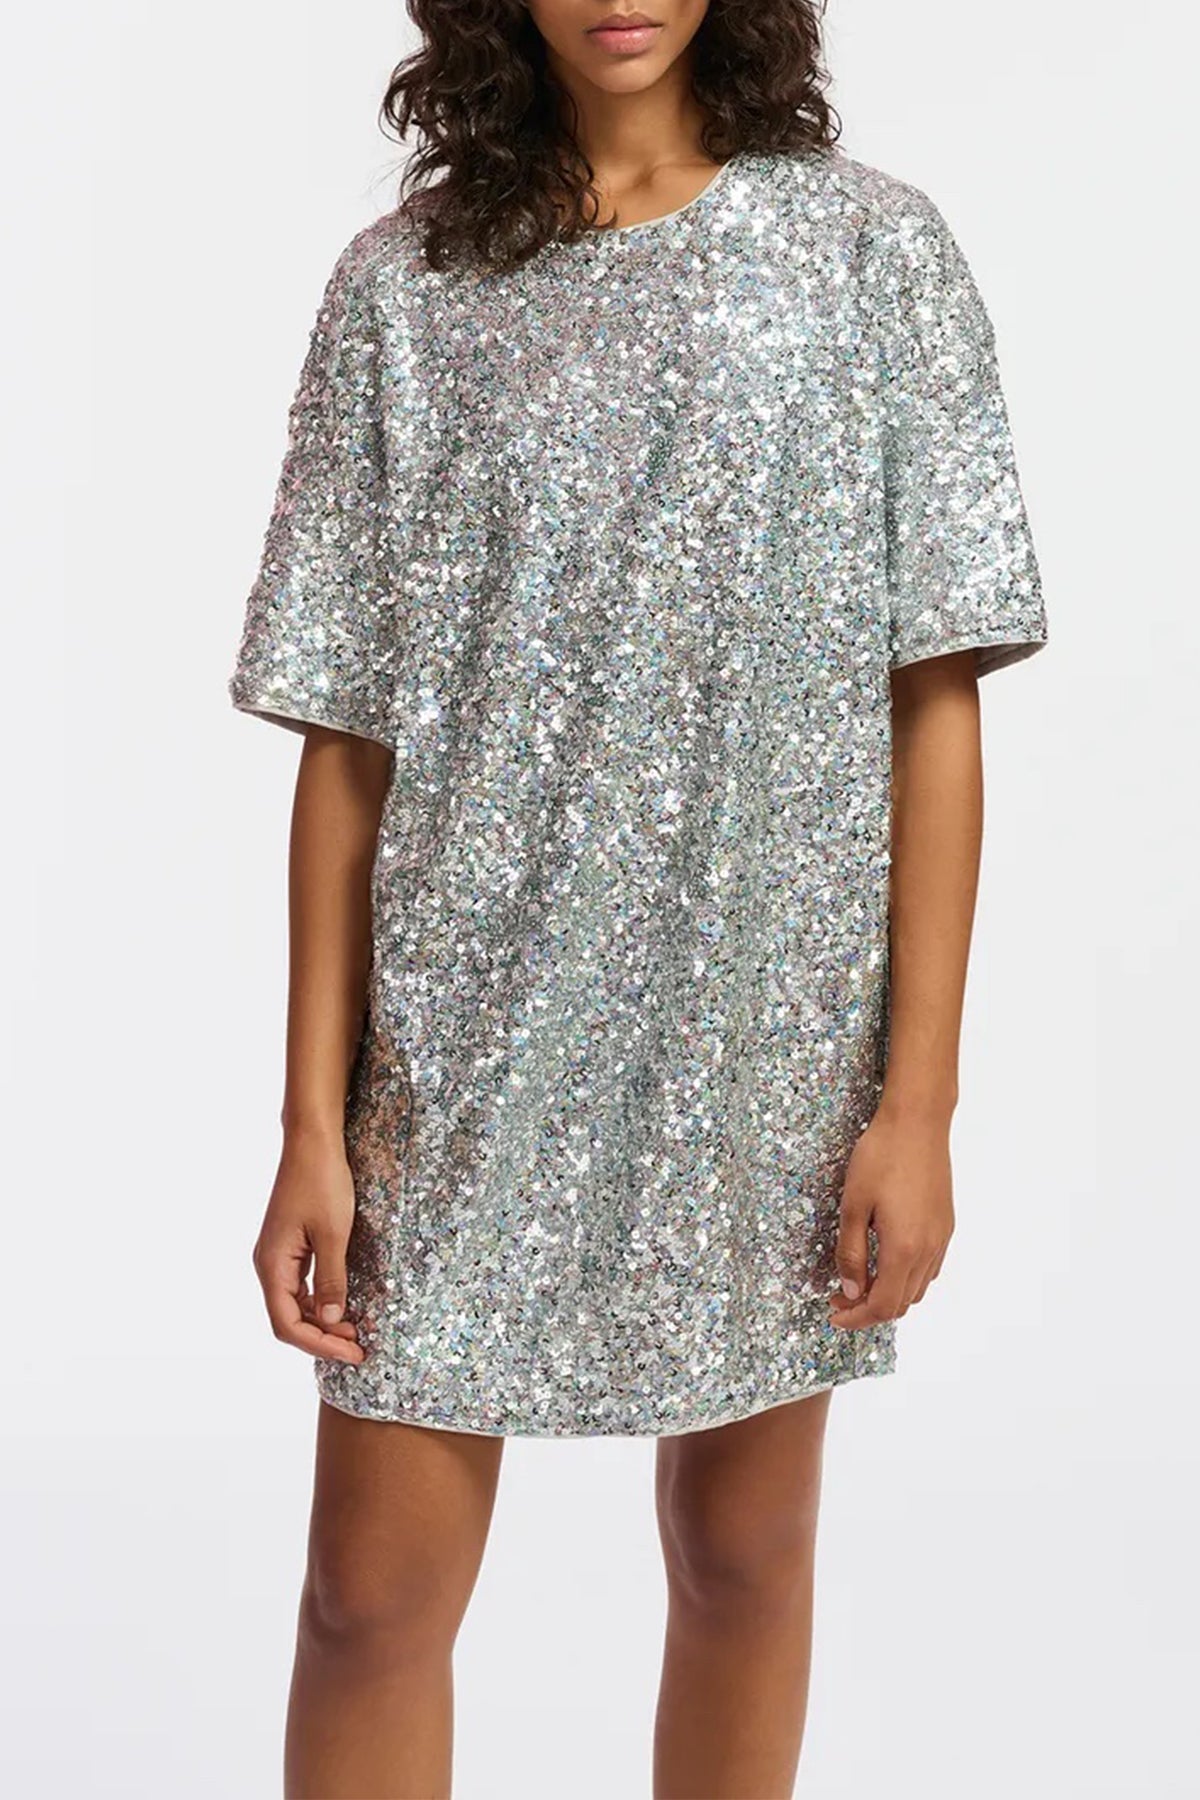 Felt Sequin - Embellished Mini Dress in Silver - shop - olivia.com